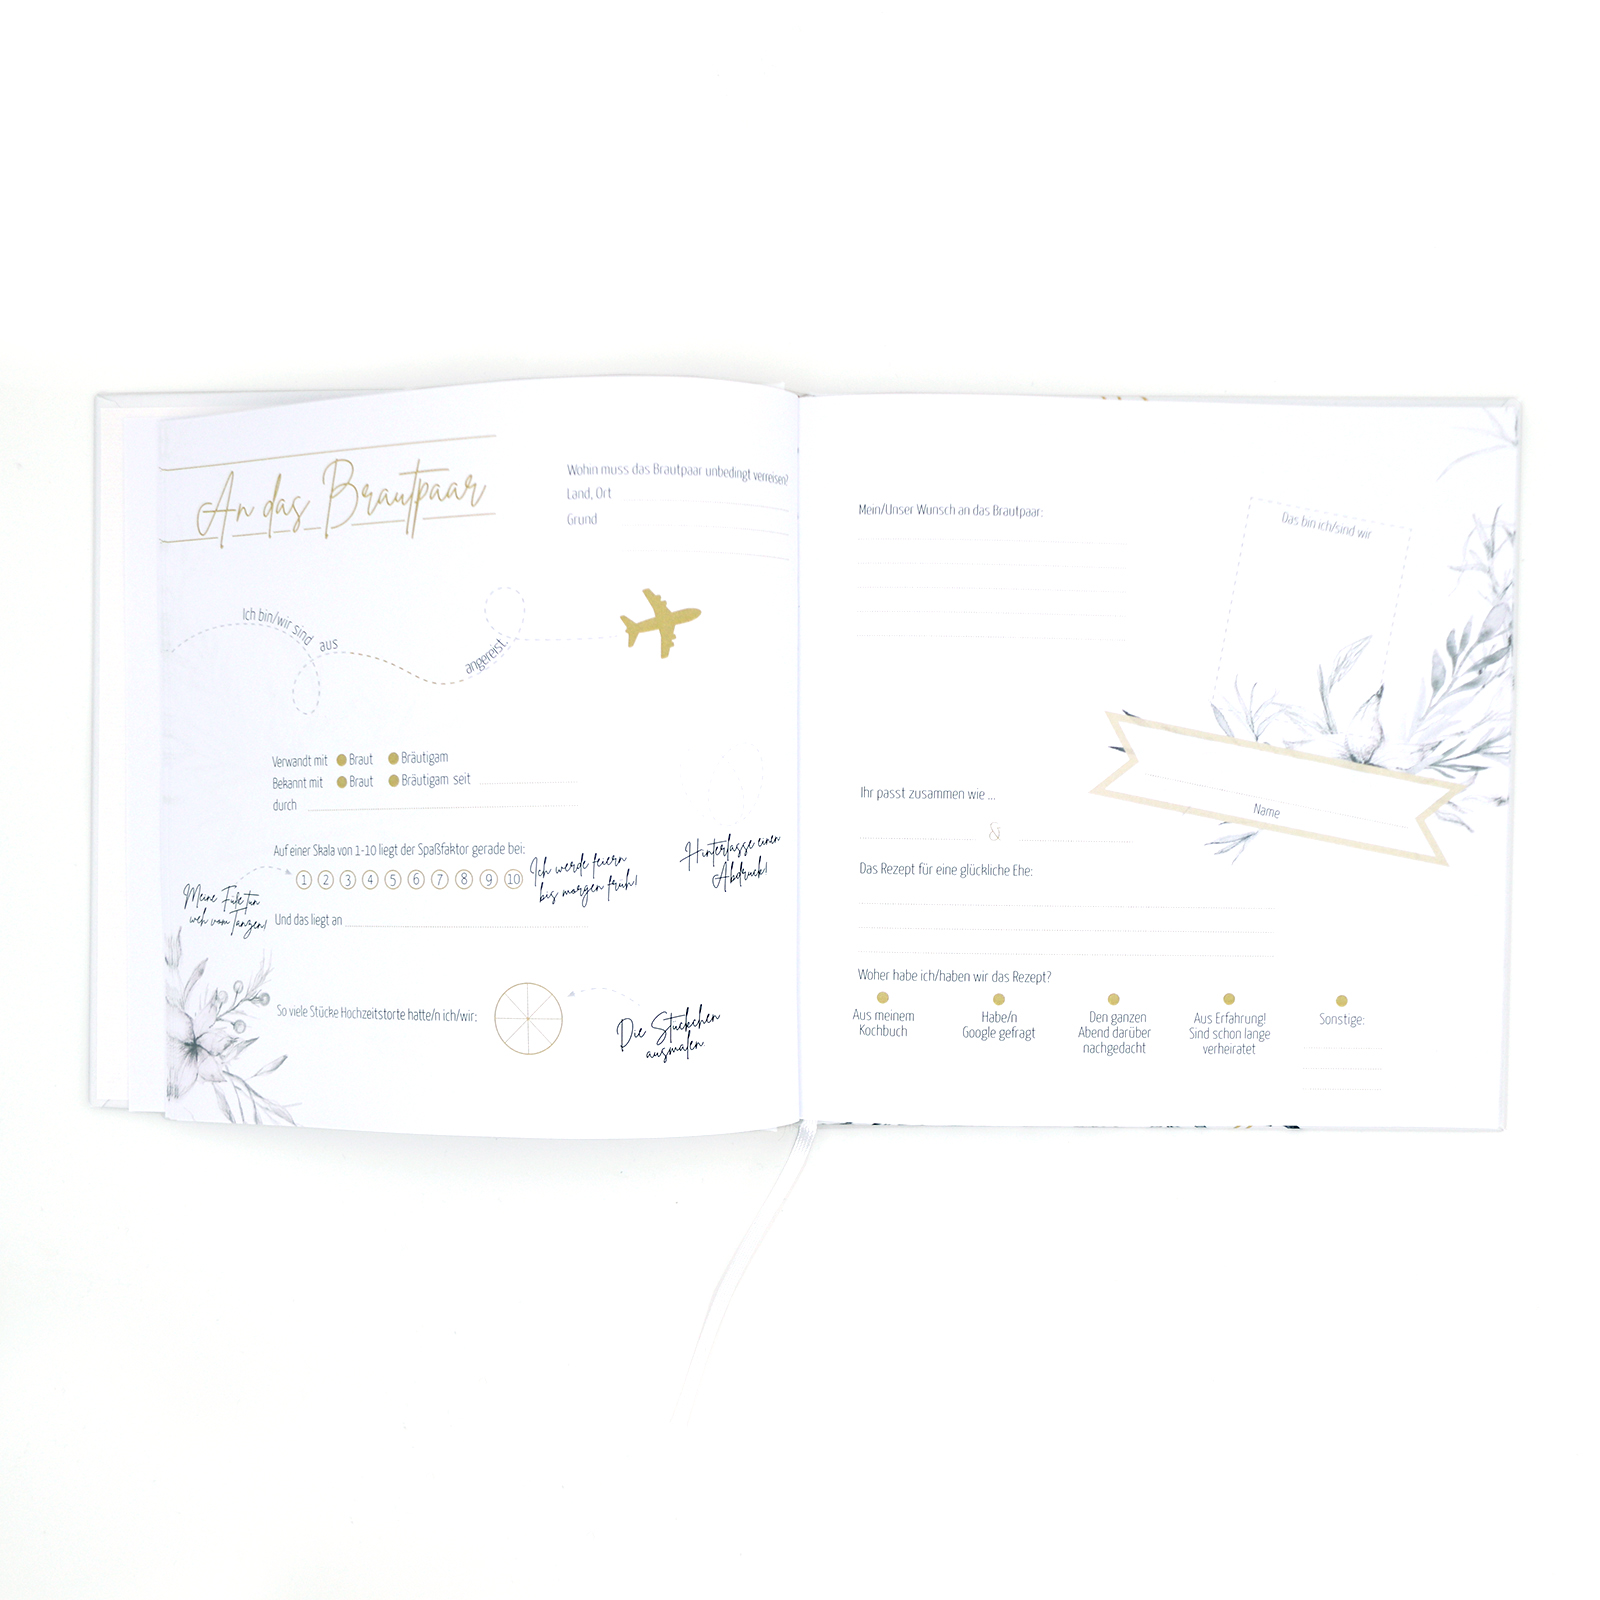 Gästebuch Hochzeit mit Fragen >Grazile mit Herz< - Gold Heissfolie - Hardcover + Fadenheftung - 120